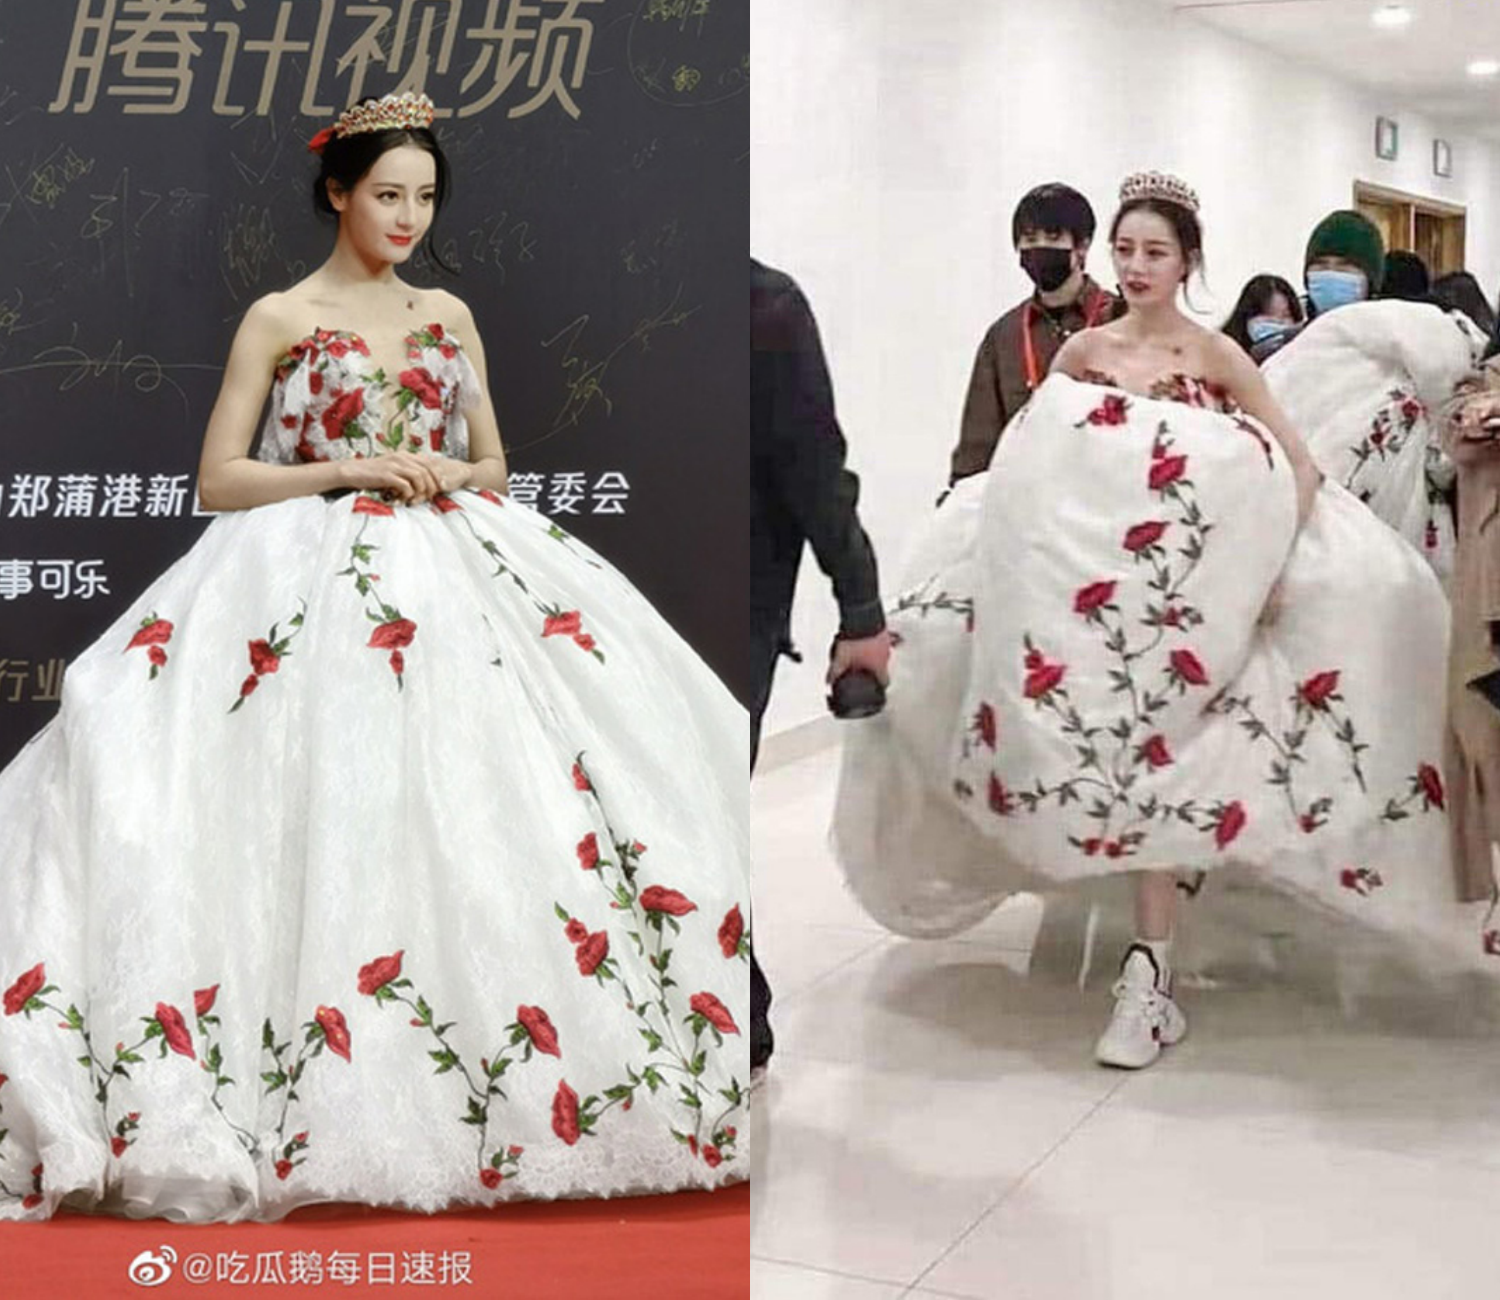 Bông hậu Hoàn vũ bị 'gạch đá' vì mặc đầm dạ hội mà đi sneakers: Netizen có đang quá lời? - Ảnh 4.